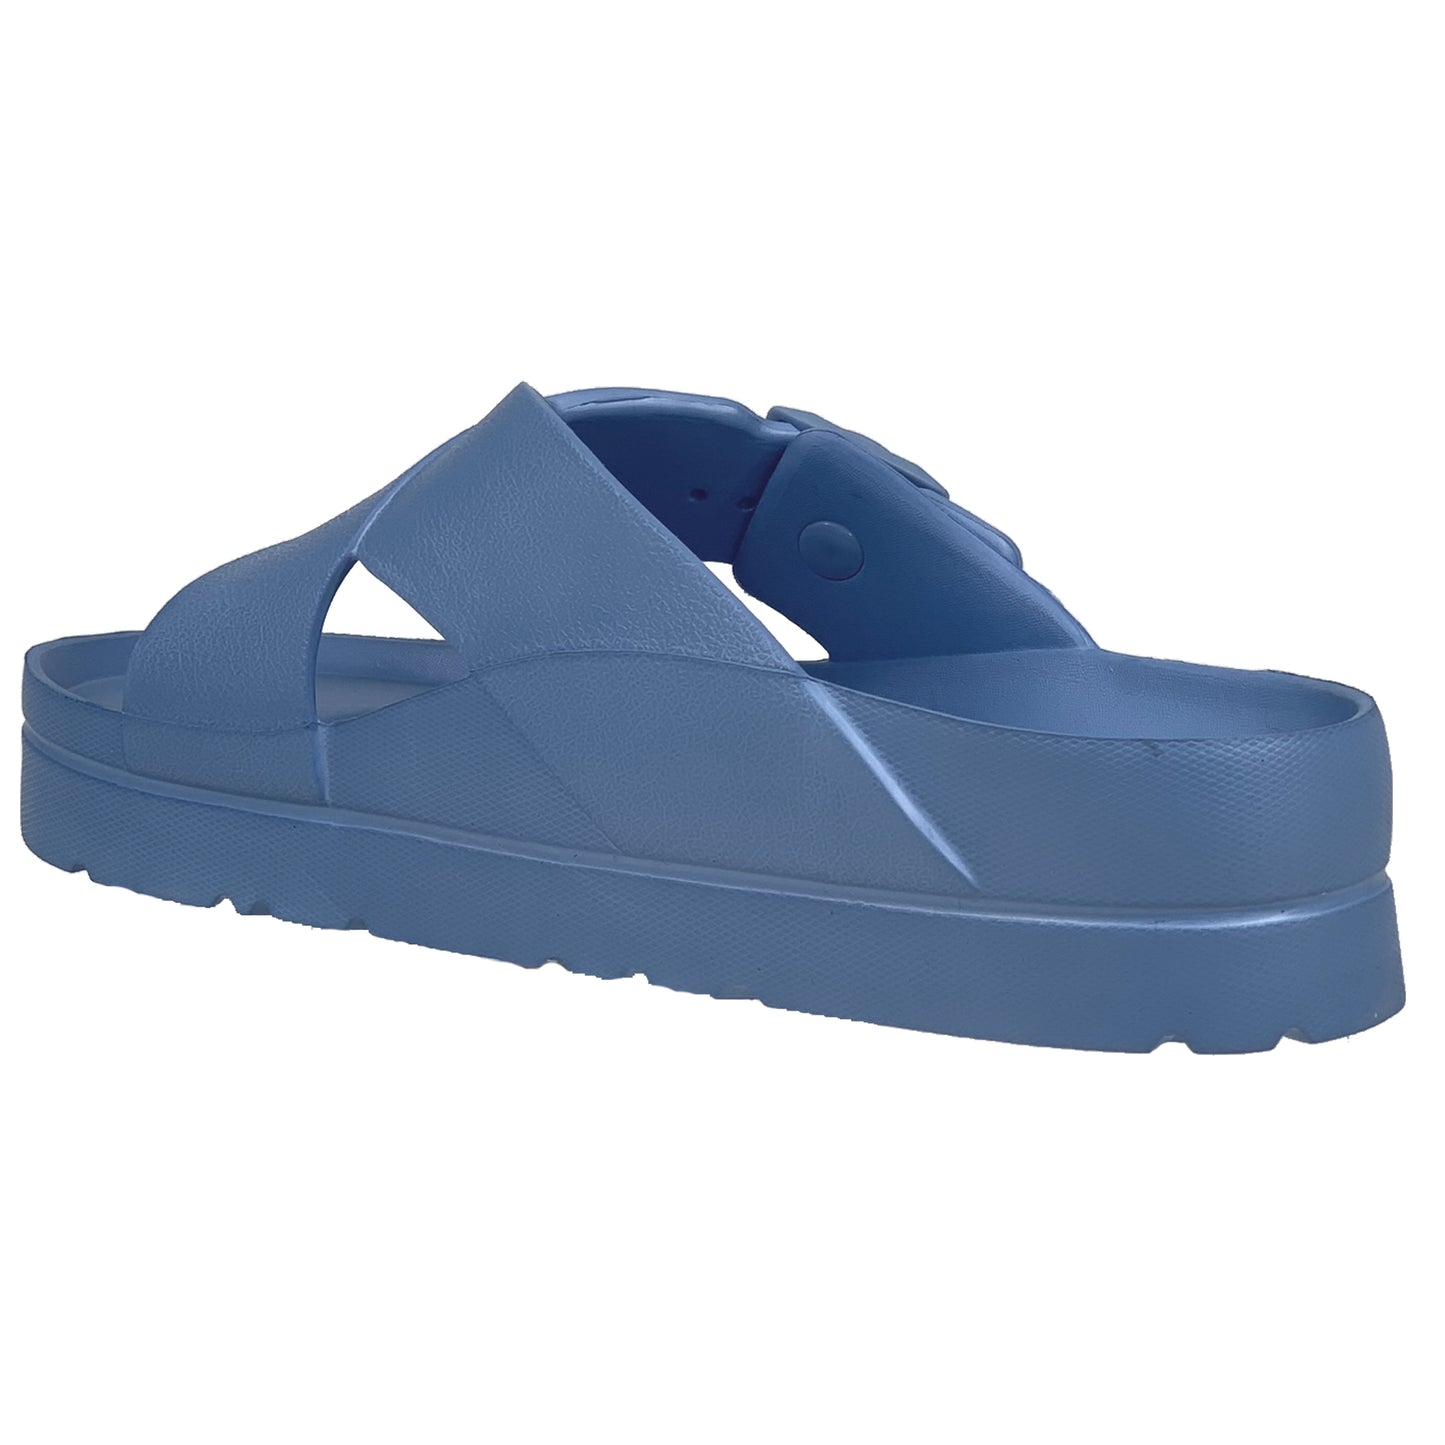 SOBEYO Light-Weight  Platform Sandals Criss-Cross Adjustable Buckles Blue